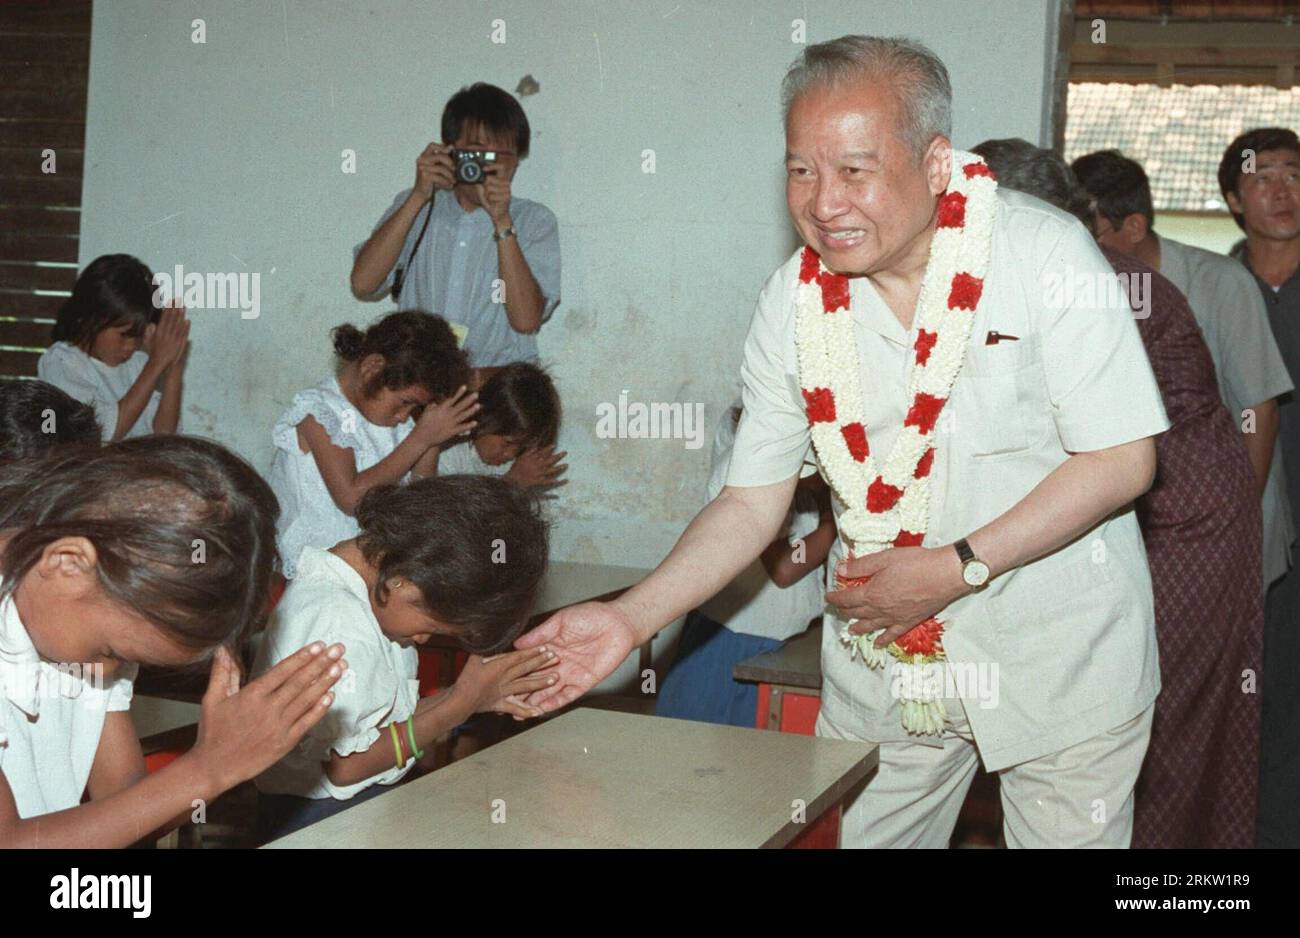 (121015) -- PÉKIN, 15 octobre 2012 (Xinhua) -- une photo prise le 18 novembre 1991 montre Norodom Sihanouk en visite à des enfants dans un orphelinat à Phnom Penh, au Cambodge. Le roi-père cambodgien Norodom Sihanouk est décédé de maladie à l'âge de 90 ans à Beijing le 15 octobre 2012.(Xinhua/Li Yonghong) CHINE-PÉKIN-CAMBODGE ANCIEN ROI-MORT PUBLICATIONxNOTxINxCHN Banque D'Images